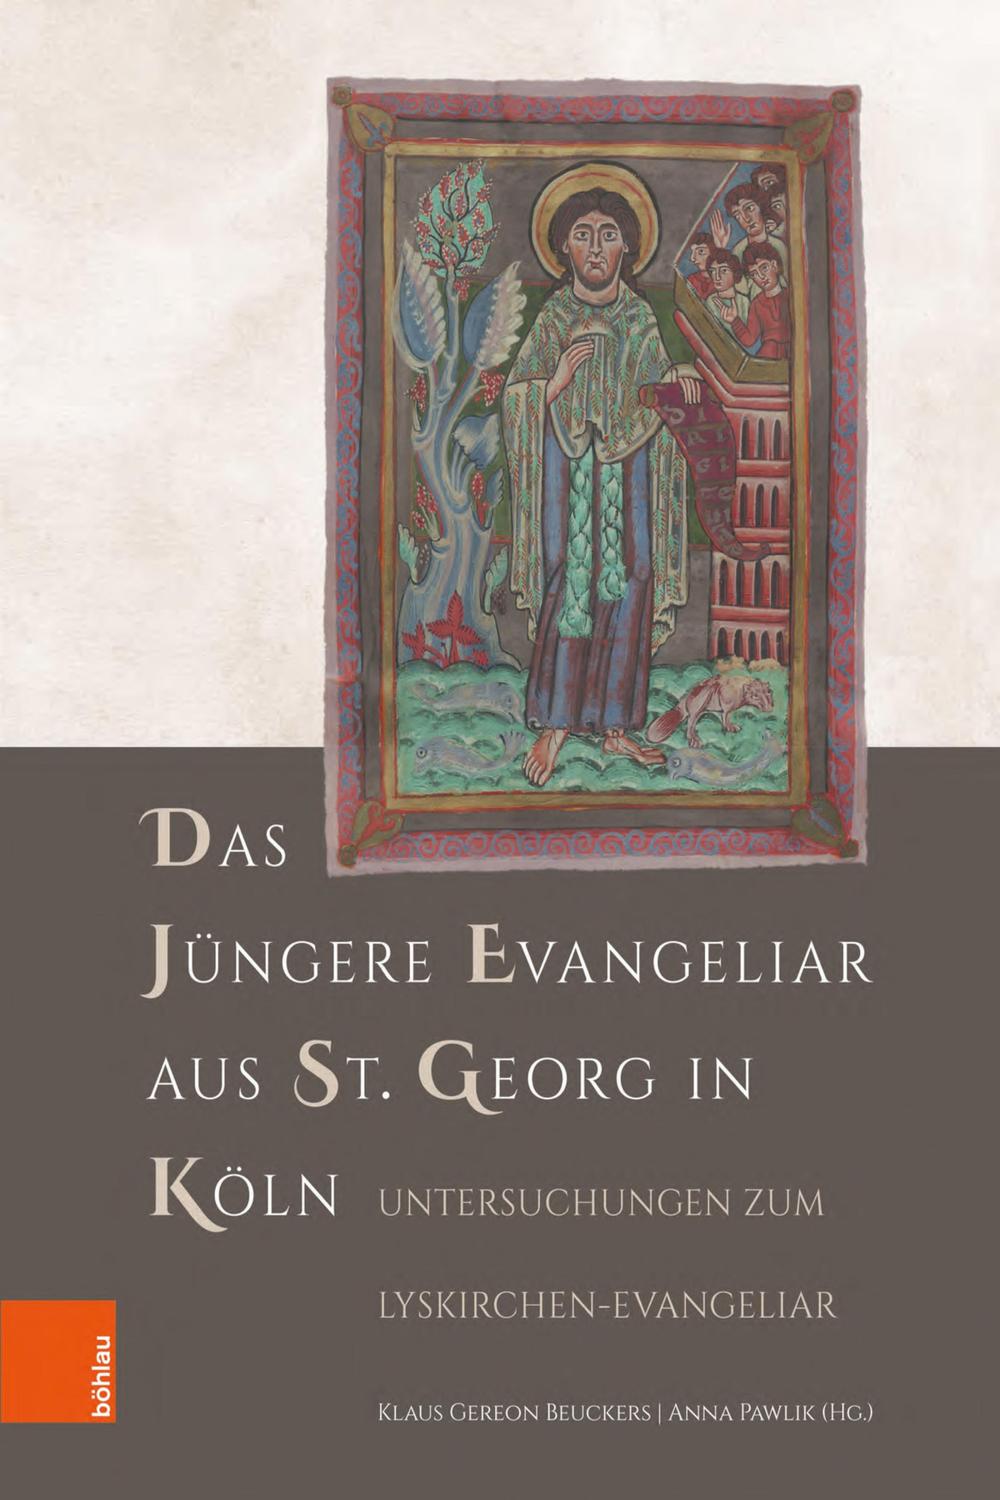 Das Jüngere Evangeliar aus St. Georg in Köln - Klaus Gereon Beuckers, Anna Pawlik